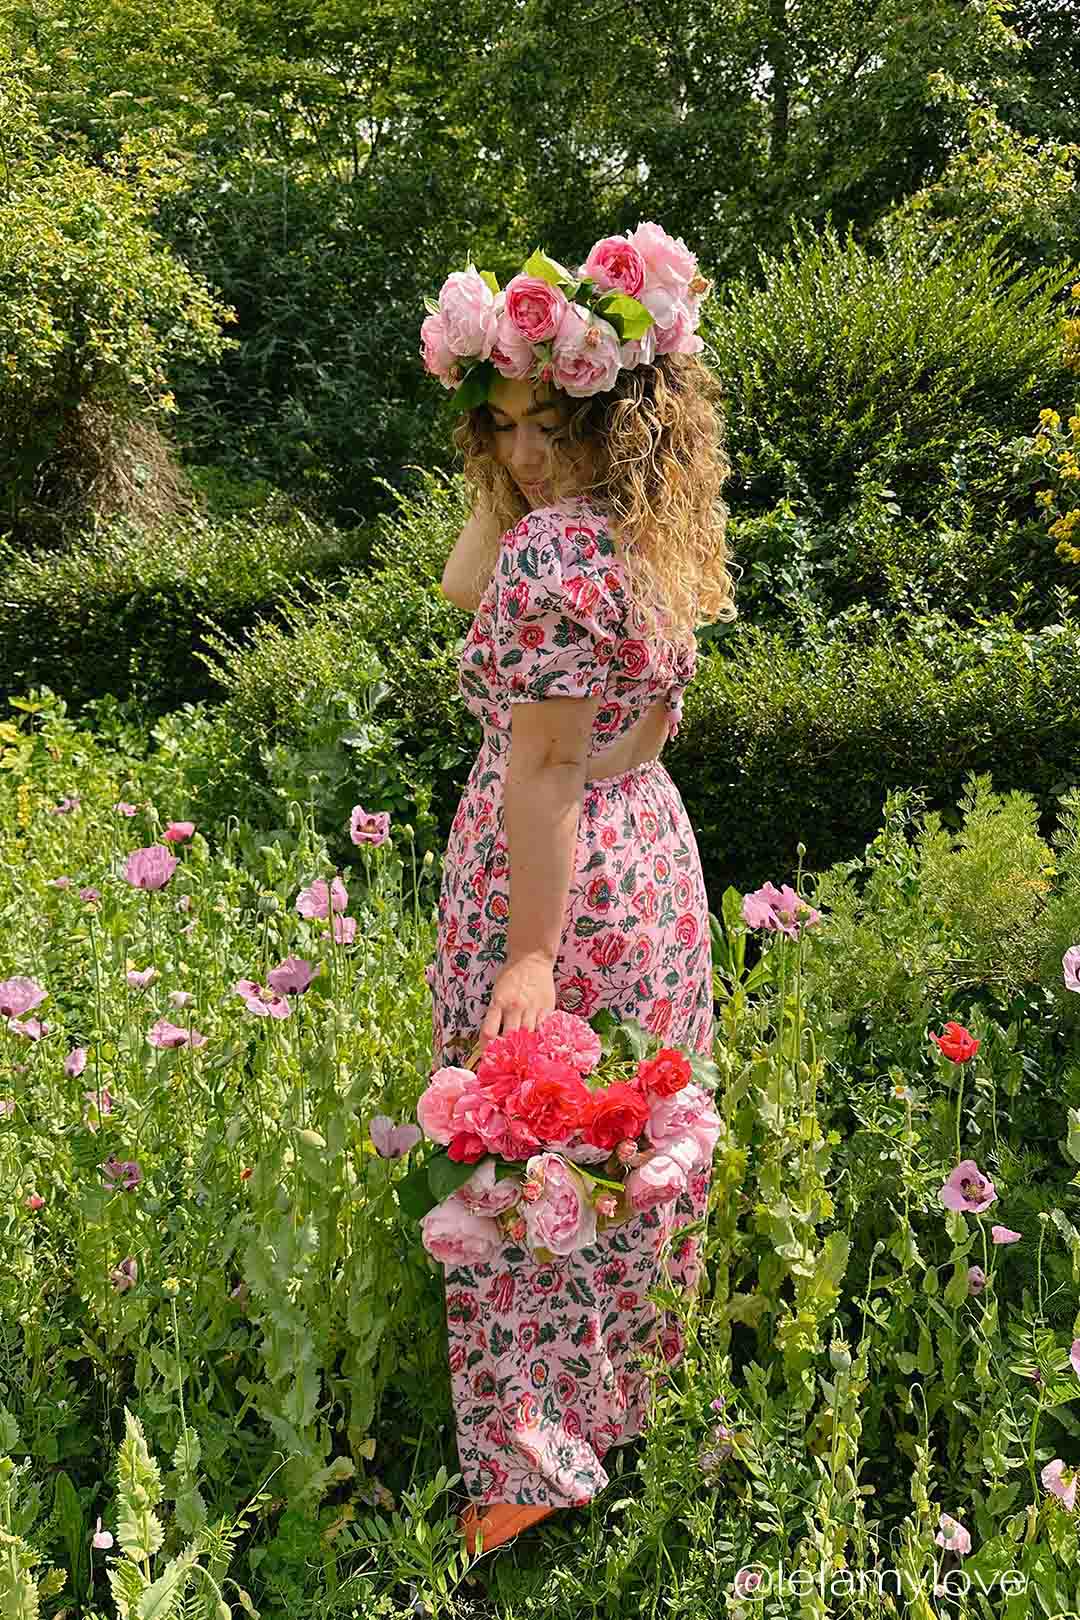 Lela May Love wears the Yolke Barbie pink floral open back Bow dress.